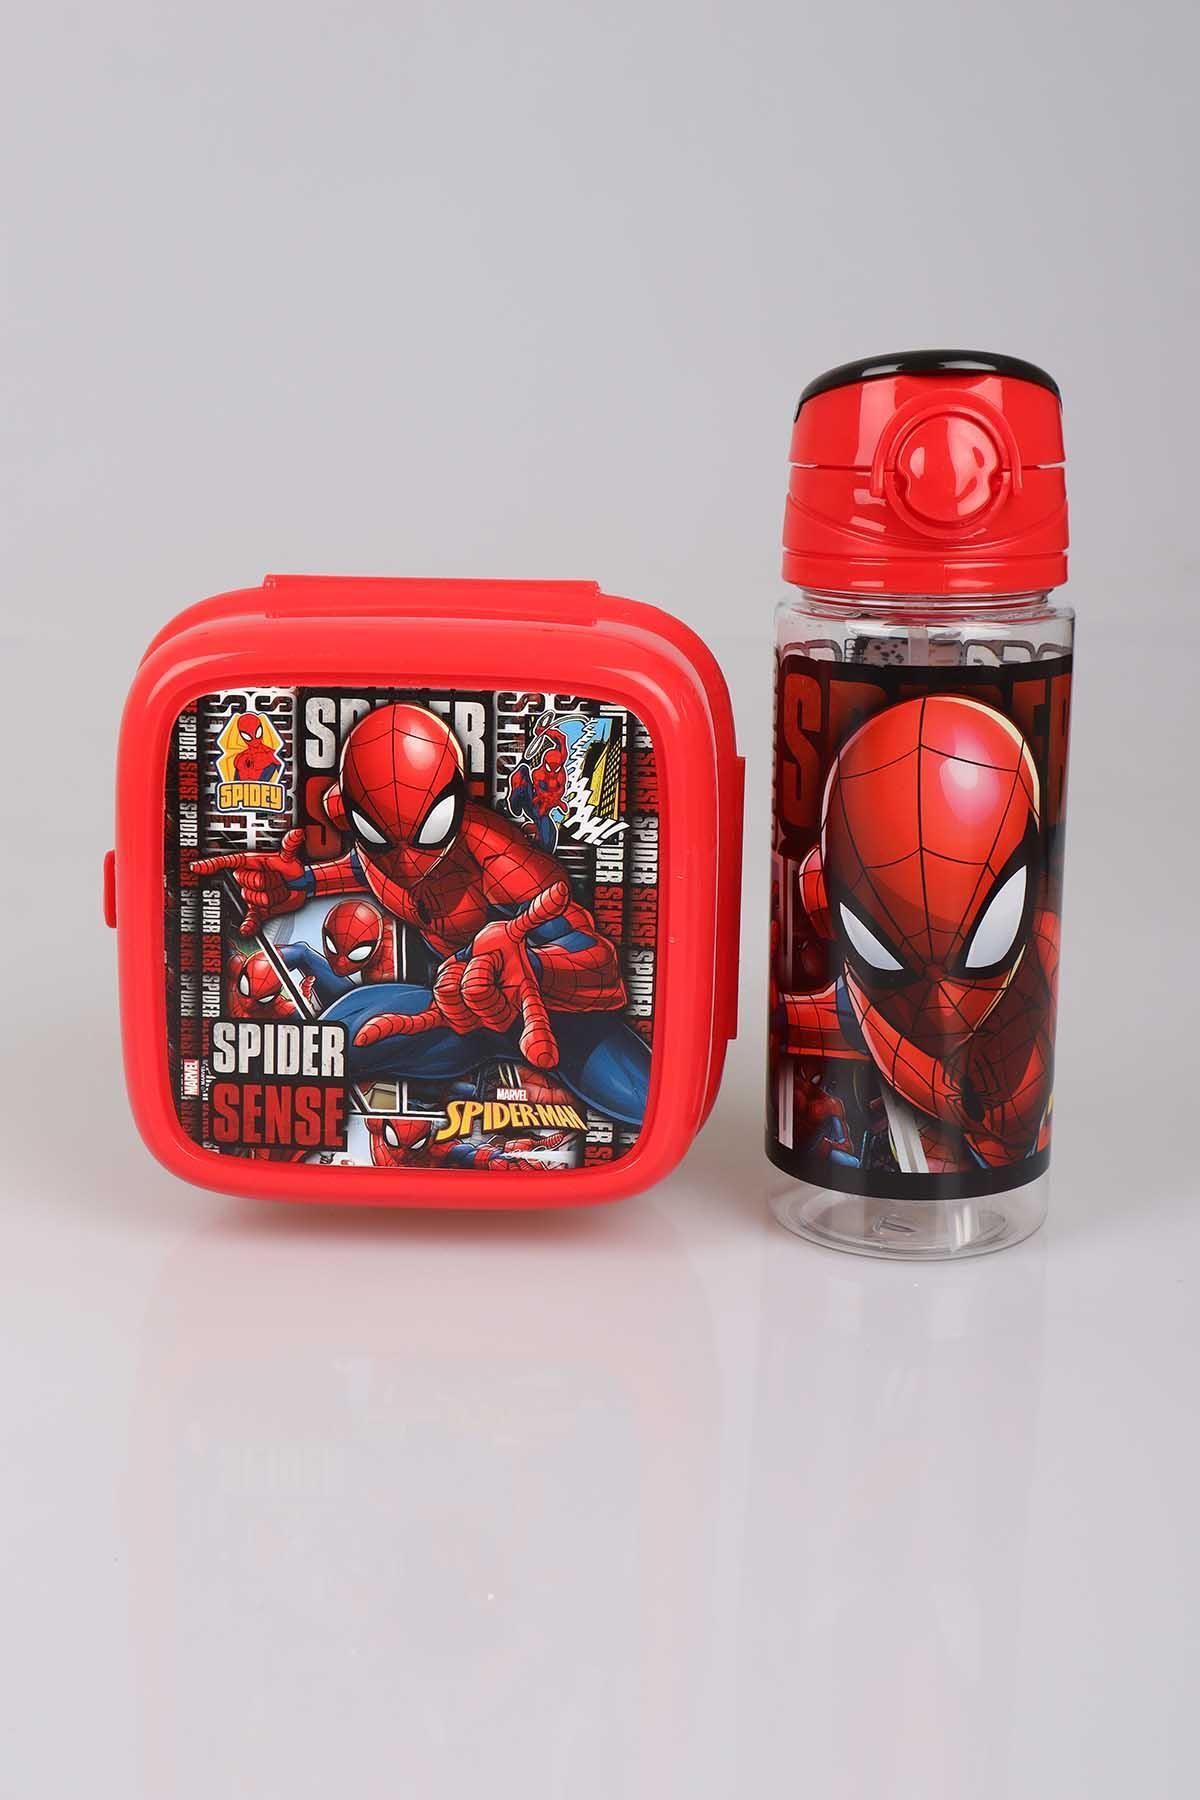 Spiderman Lisanslı 500 ml Trıtan Matara Ve 2 Katlı Beslenme Kutusu / Lunch Box Seti